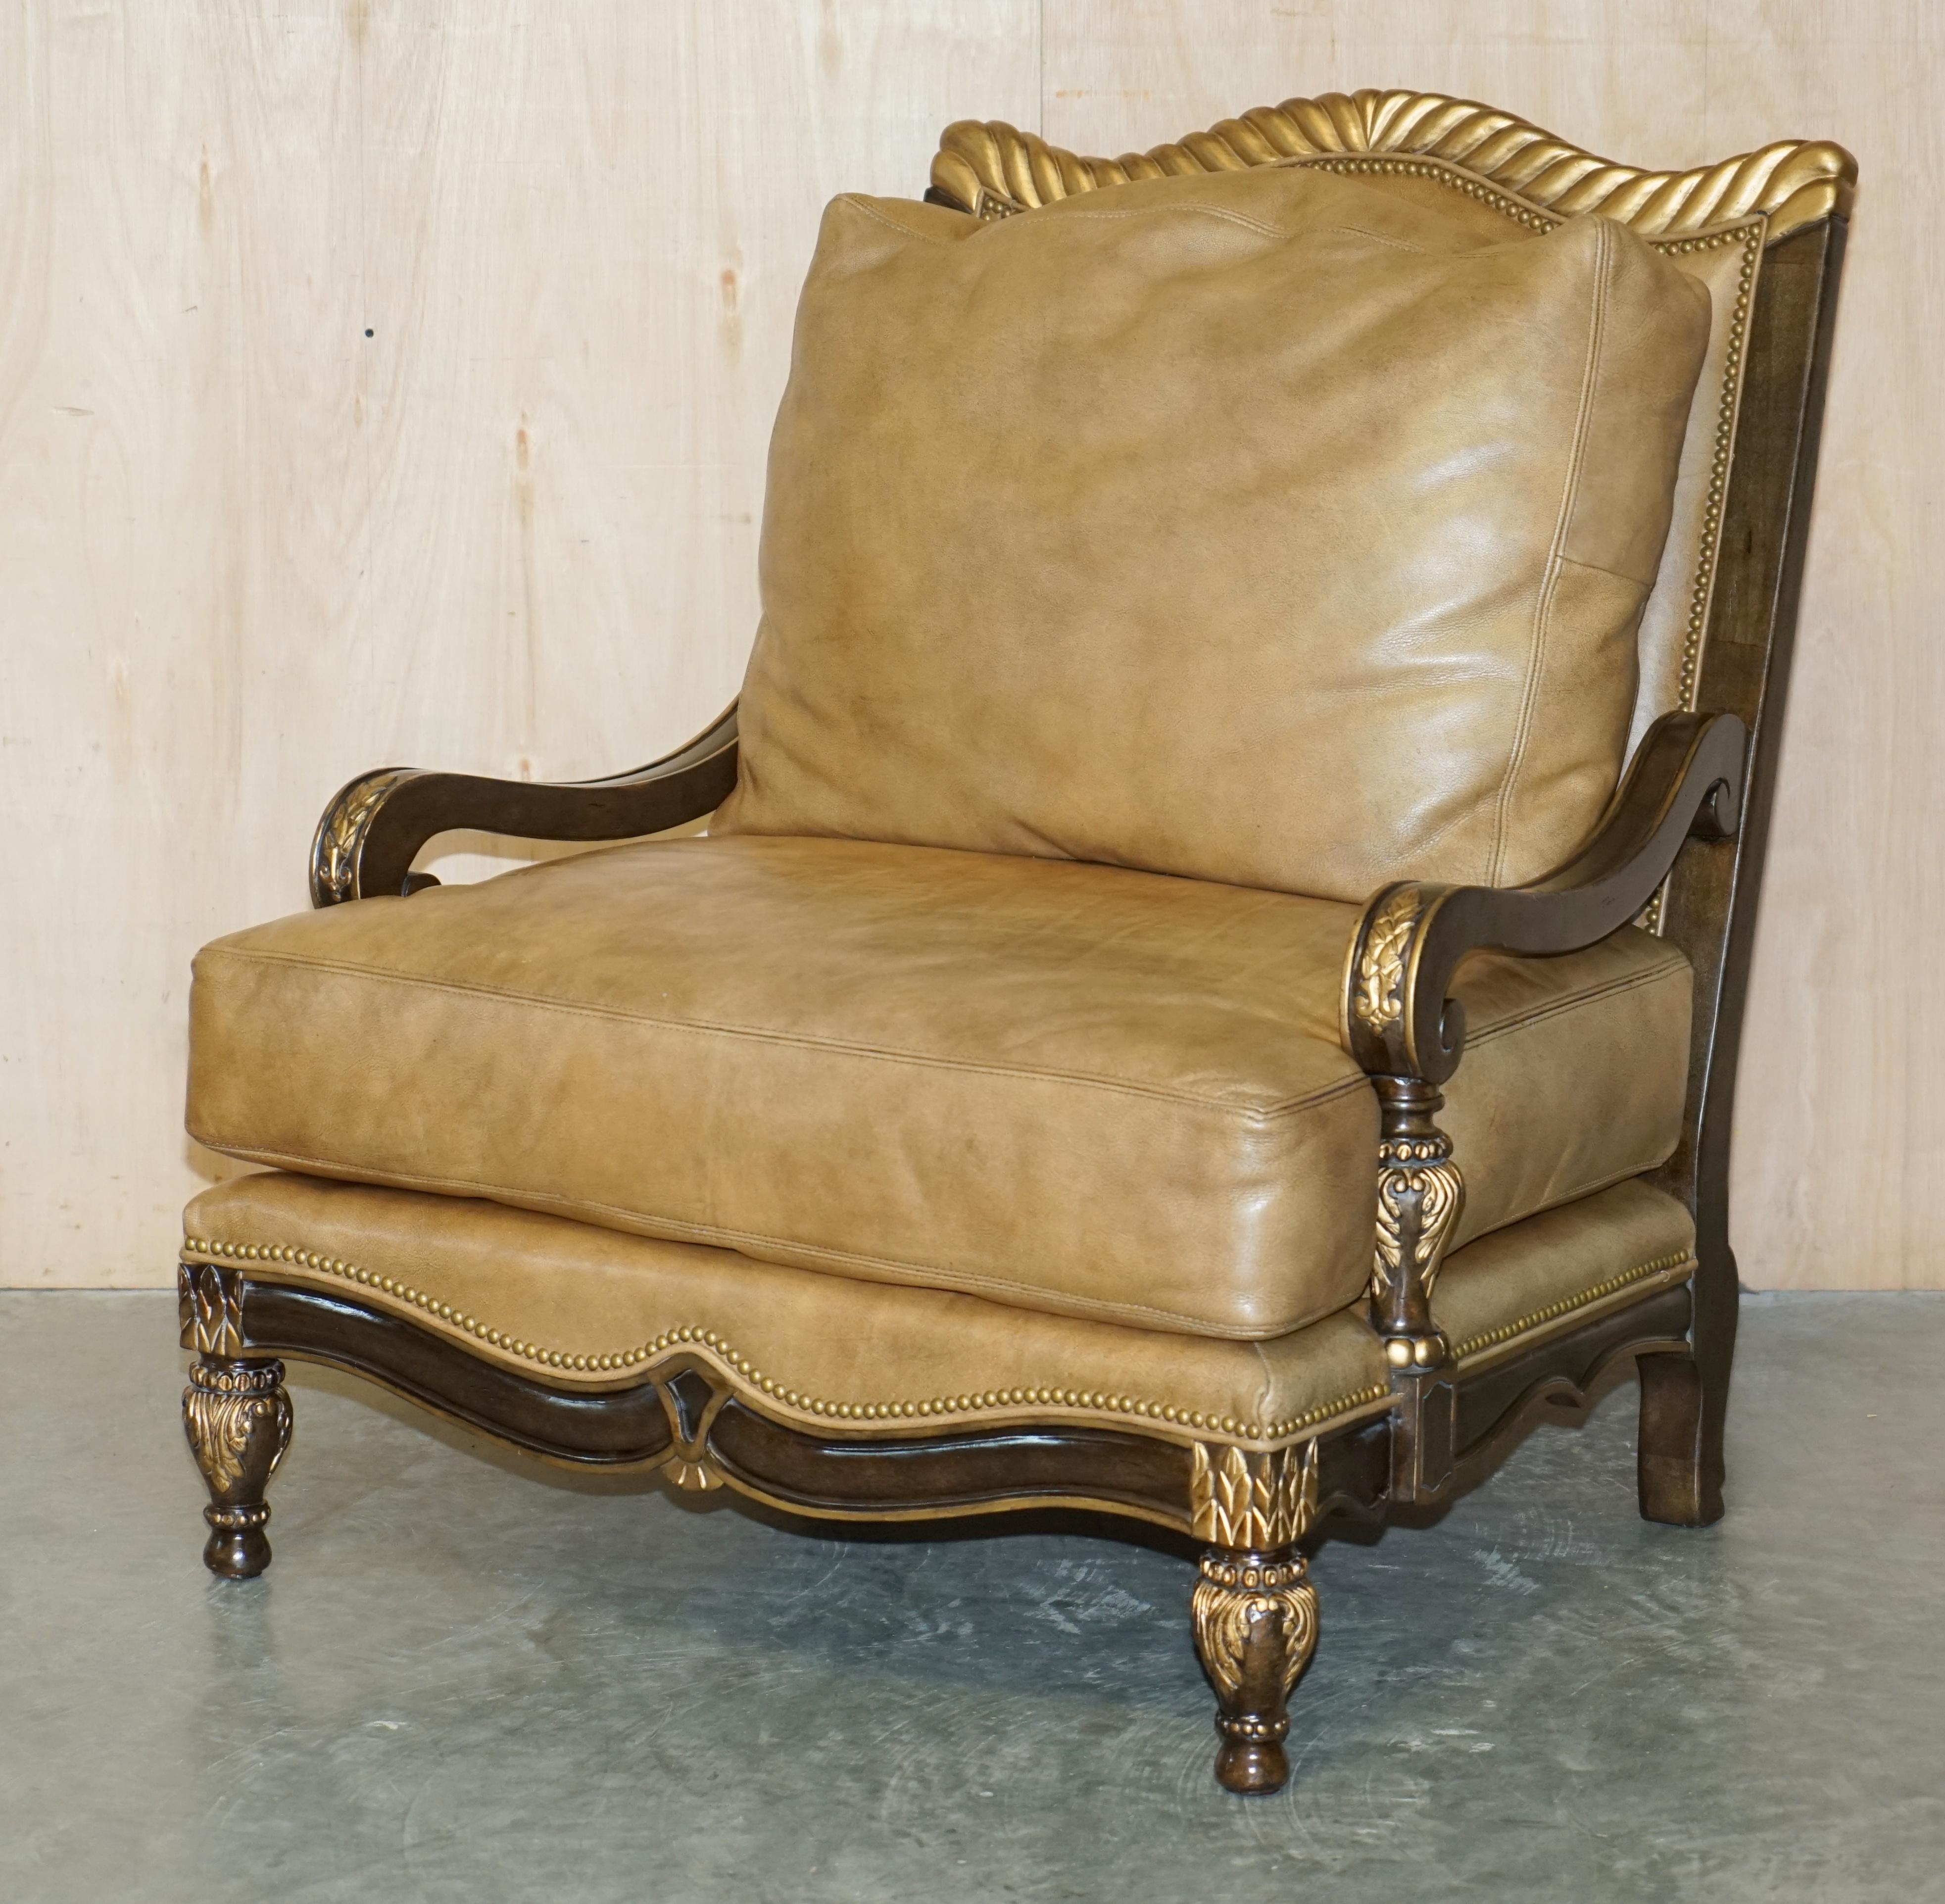 Nous avons le plaisir de proposer à la vente ce très grand fauteuil de style trône en bois doré italien, fait à la main, et son pouf assorti surdimensionné. 

Un fauteuil et un pouf très beaux, bien faits et super confortables. Ils sont grands et